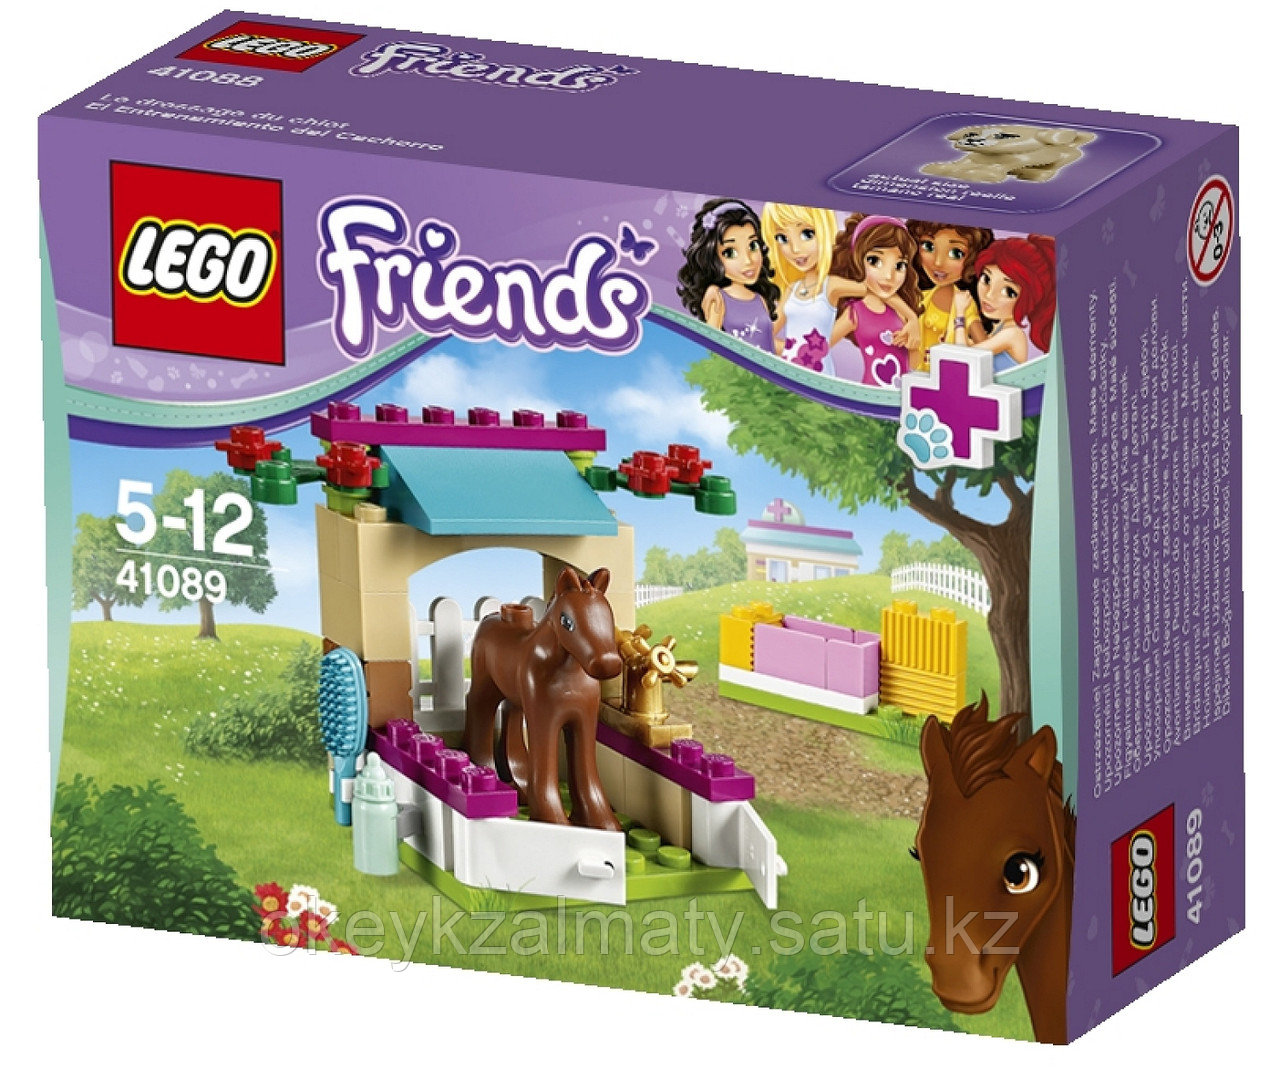 LEGO Friends: Жеребенок 41089